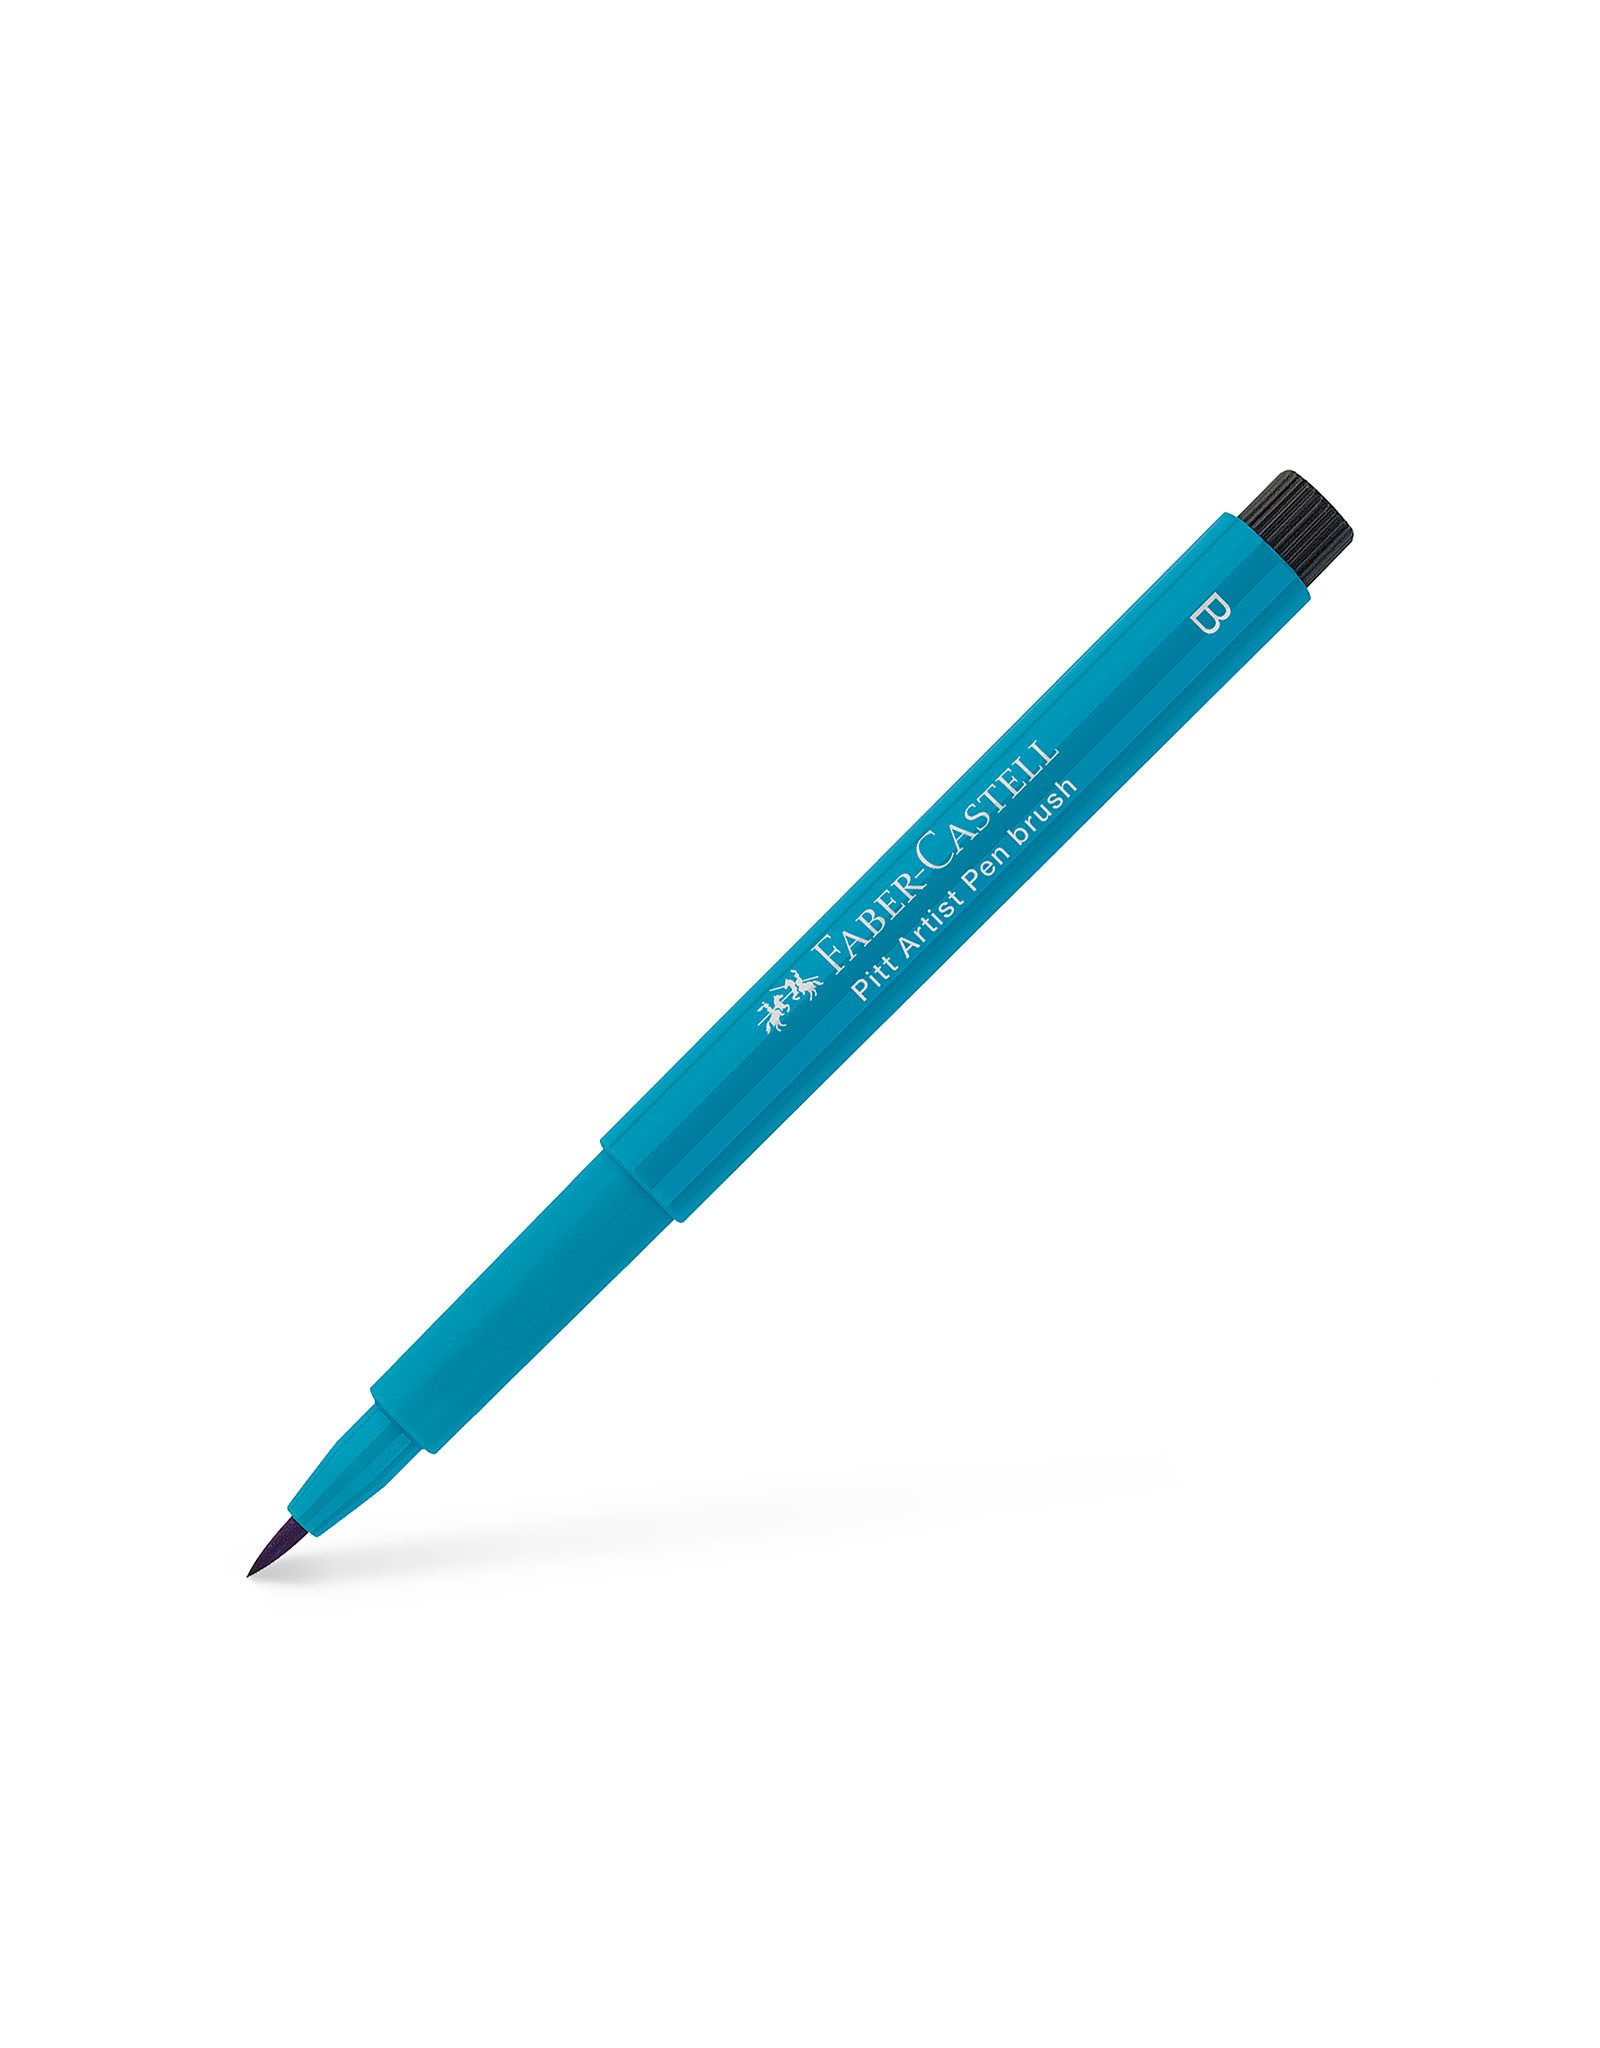 FABER-CASTELL Pitt Artist Pen, Brush, Cobalt Turquoise